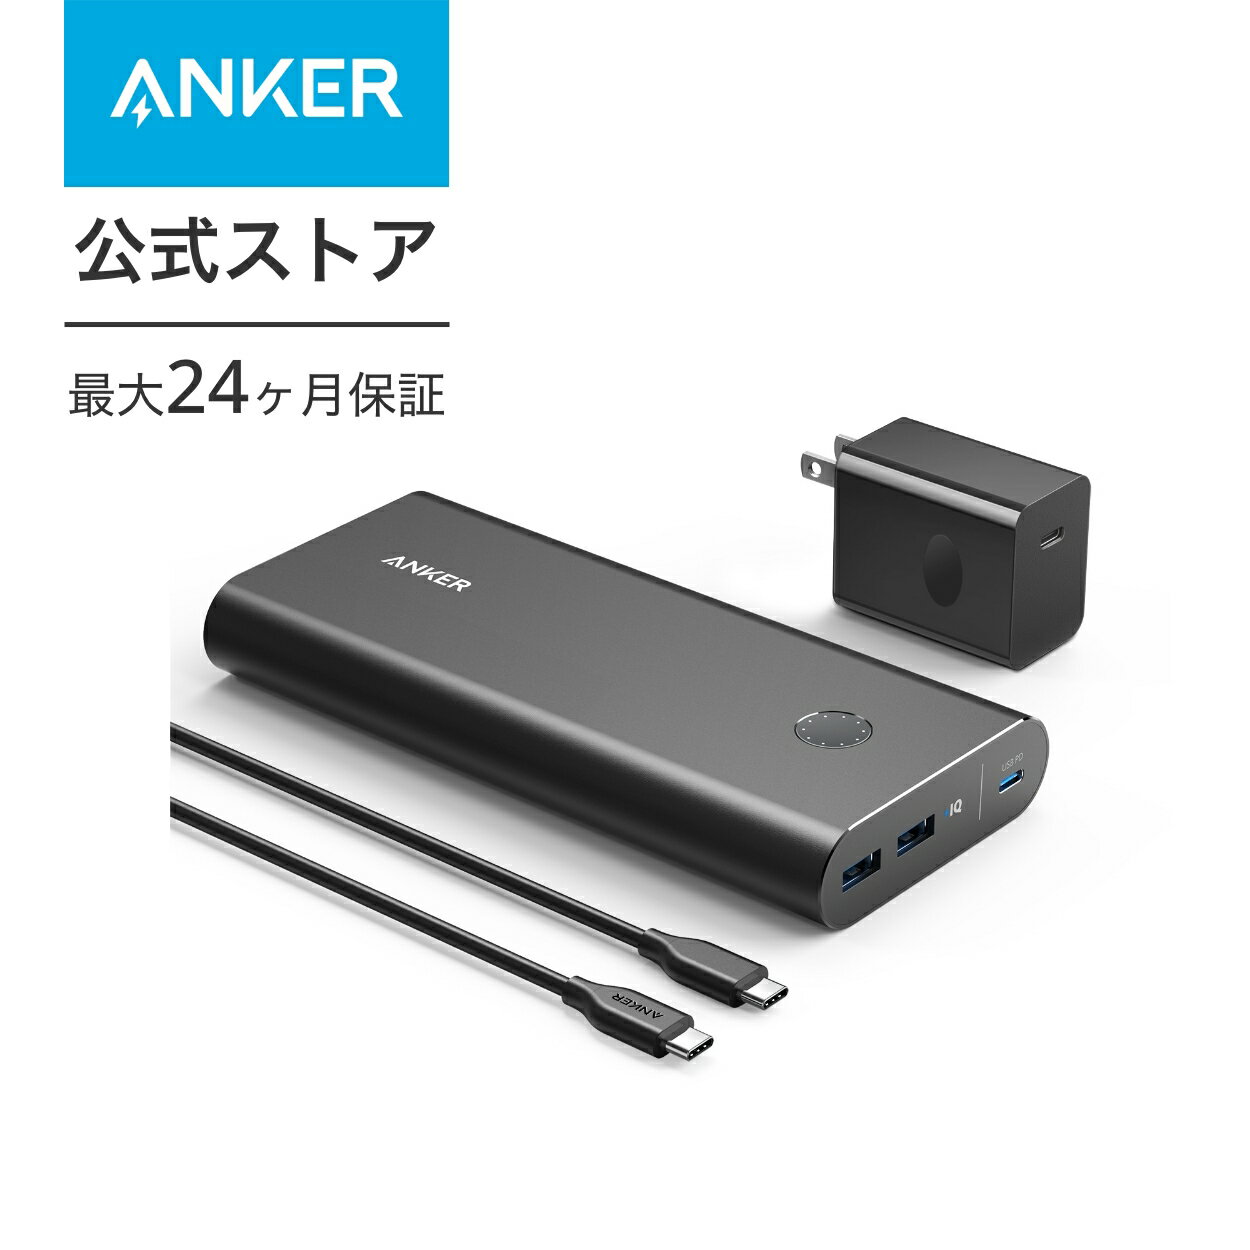 【あす楽対応】Anker PowerCore+ 26800 PD 45W (26800mAh 3ポート モバイルバッテリー)【PSE技術基準適合 / USB Power Delivery対応 / US